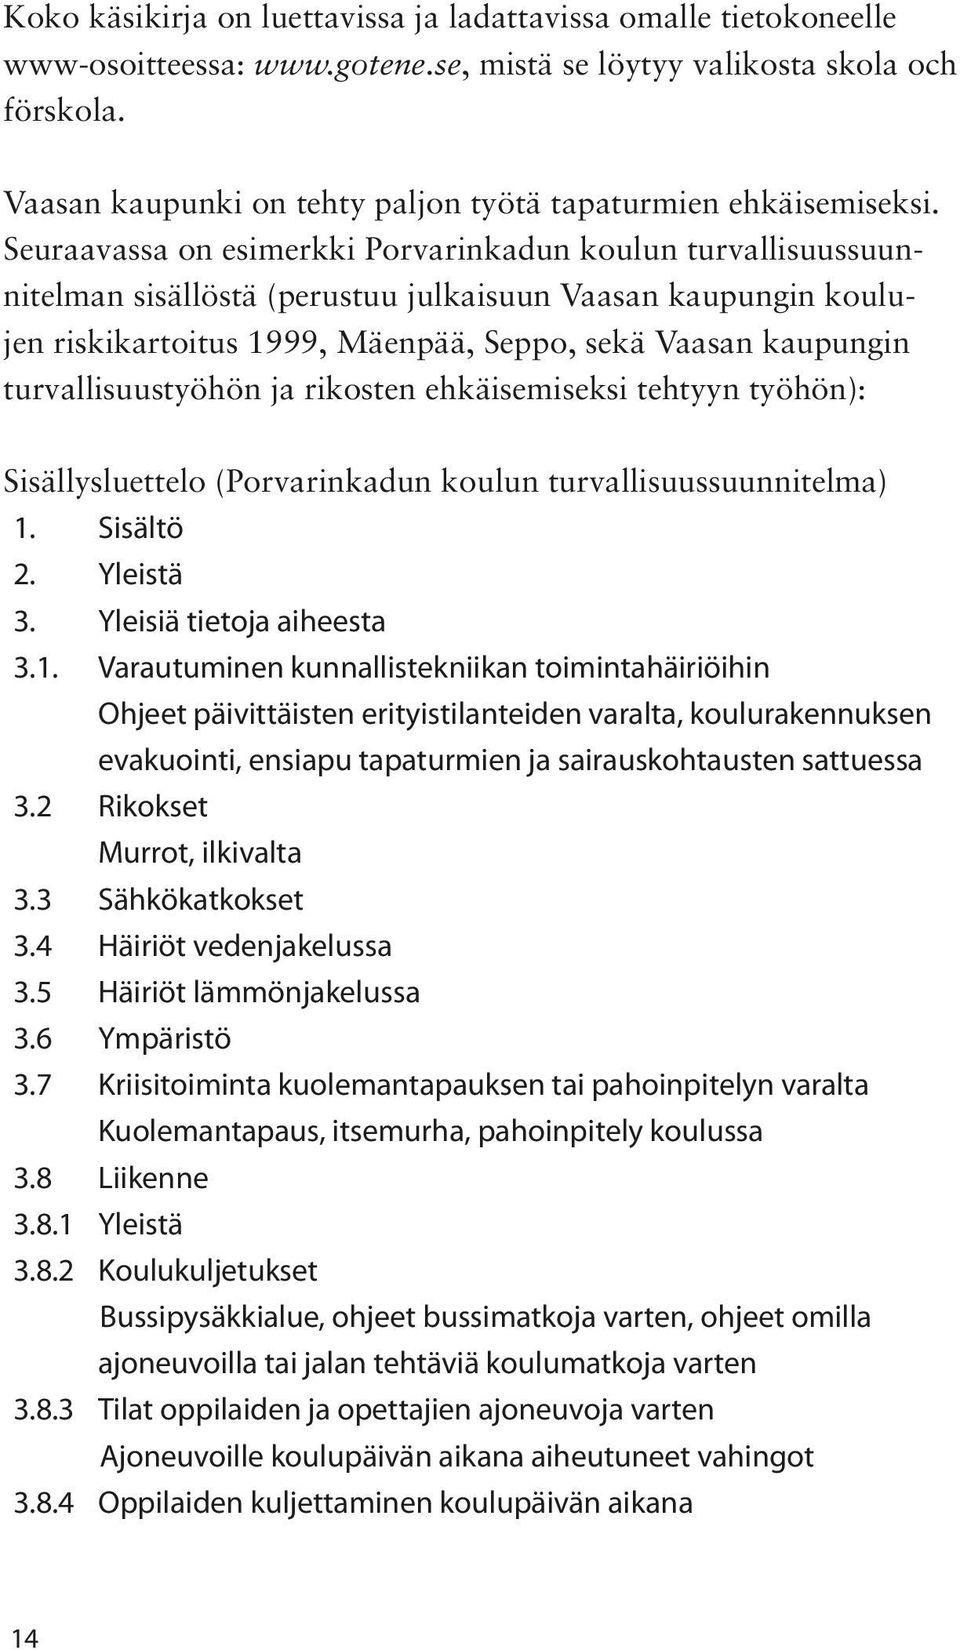 Seuraavassa on esimerkki Porvarinkadun koulun turvallisuussuunnitelman sisällöstä (perustuu julkaisuun Vaasan kaupungin koulujen riskikartoitus 1999, Mäenpää, Seppo, sekä Vaasan kaupungin